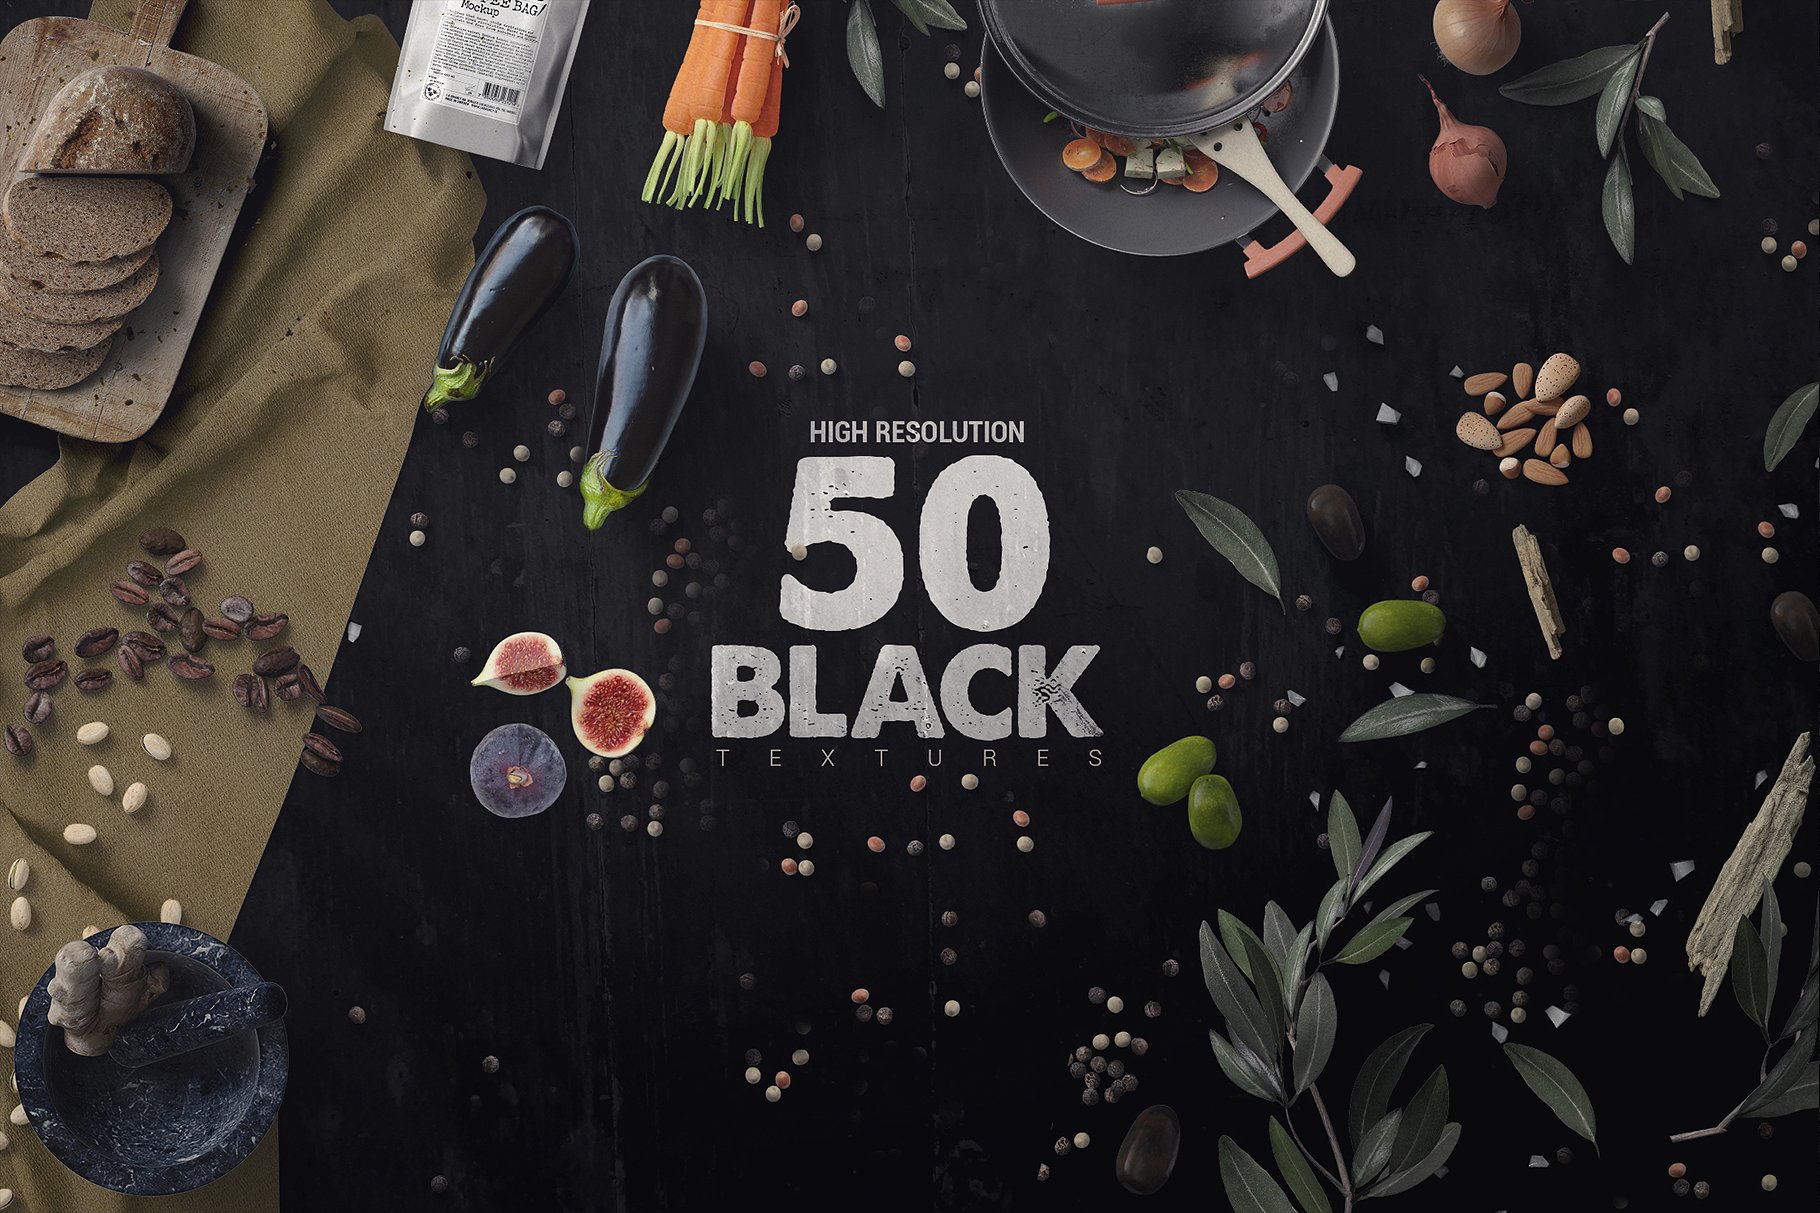 50款高品质的黑色纹理素材 50 Black Textures vol.4 [jpg]插图(6)